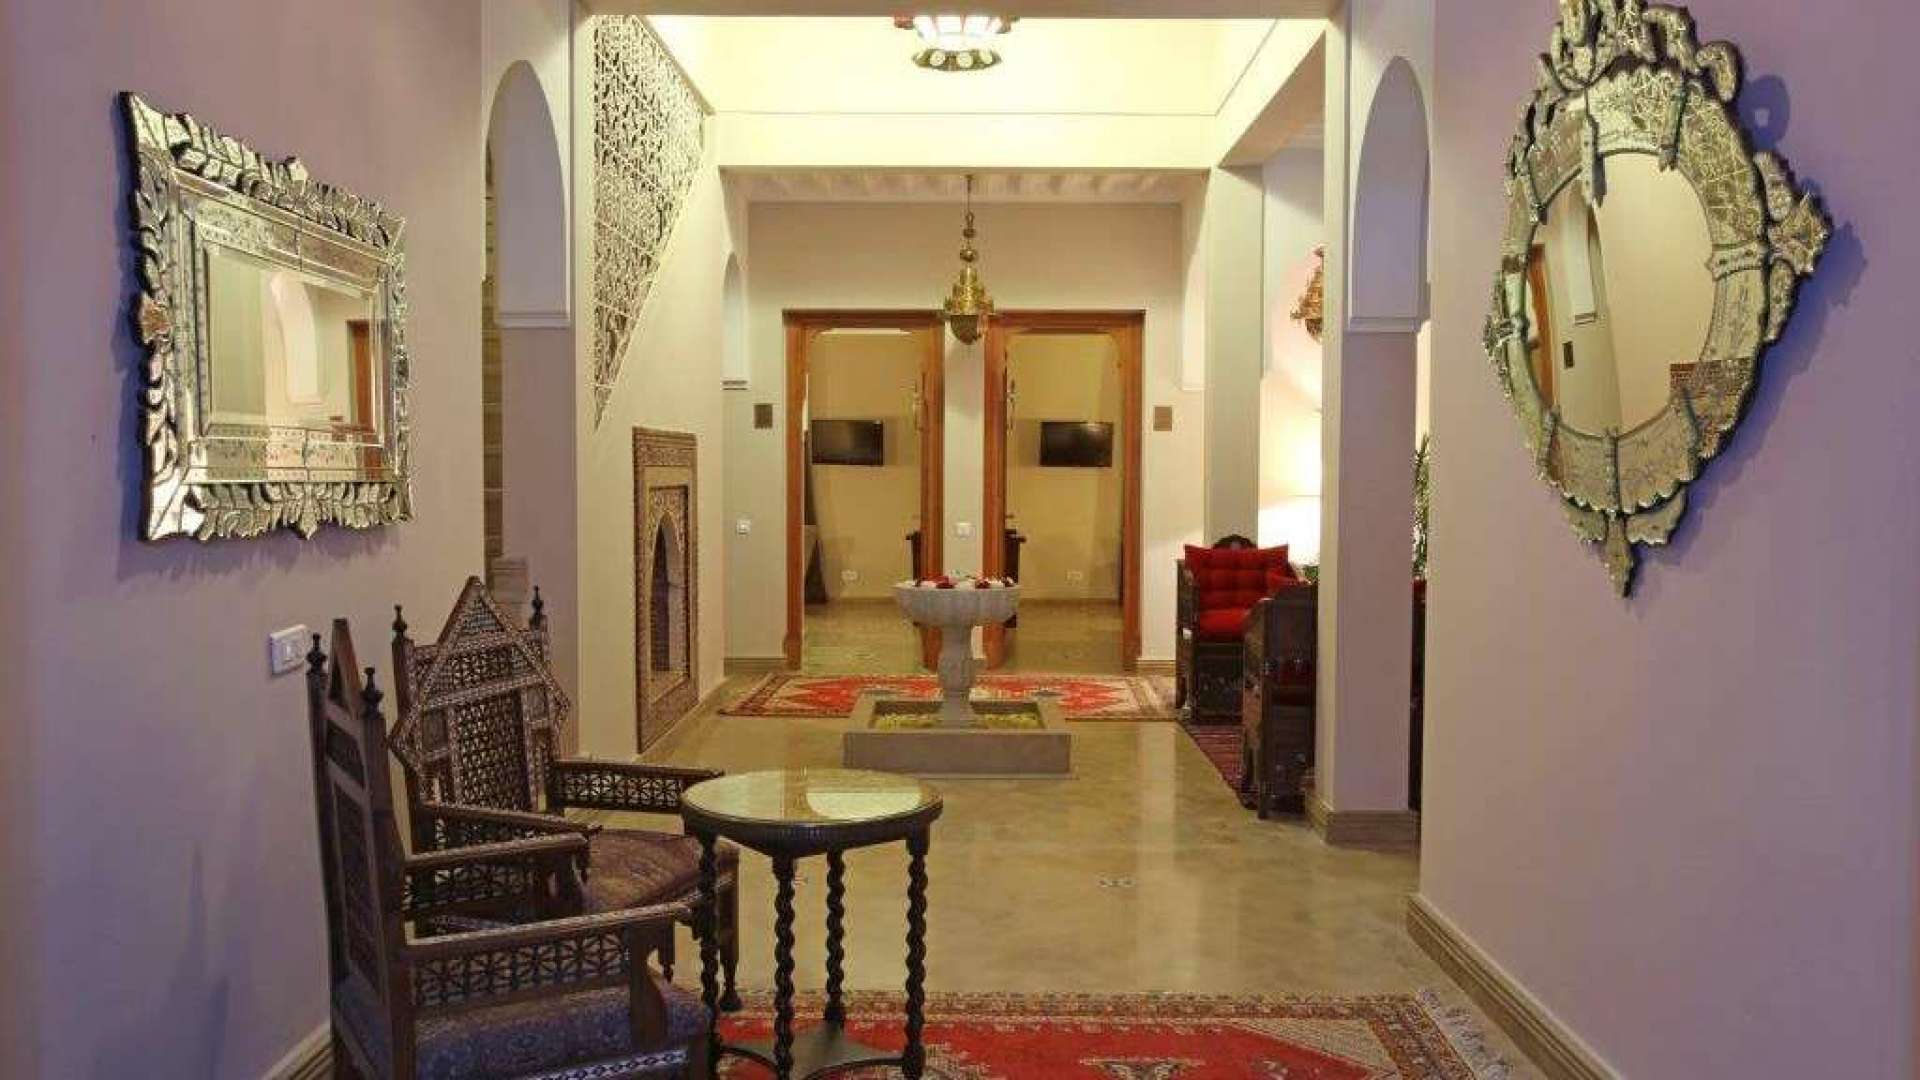 Location de vacances,Villa, Location saisonnière: Maison d’hôtes 12 suites exceptionnelles pour des vacances de rêve à Marrakech,Marrakech,Route d'Ouarzazate